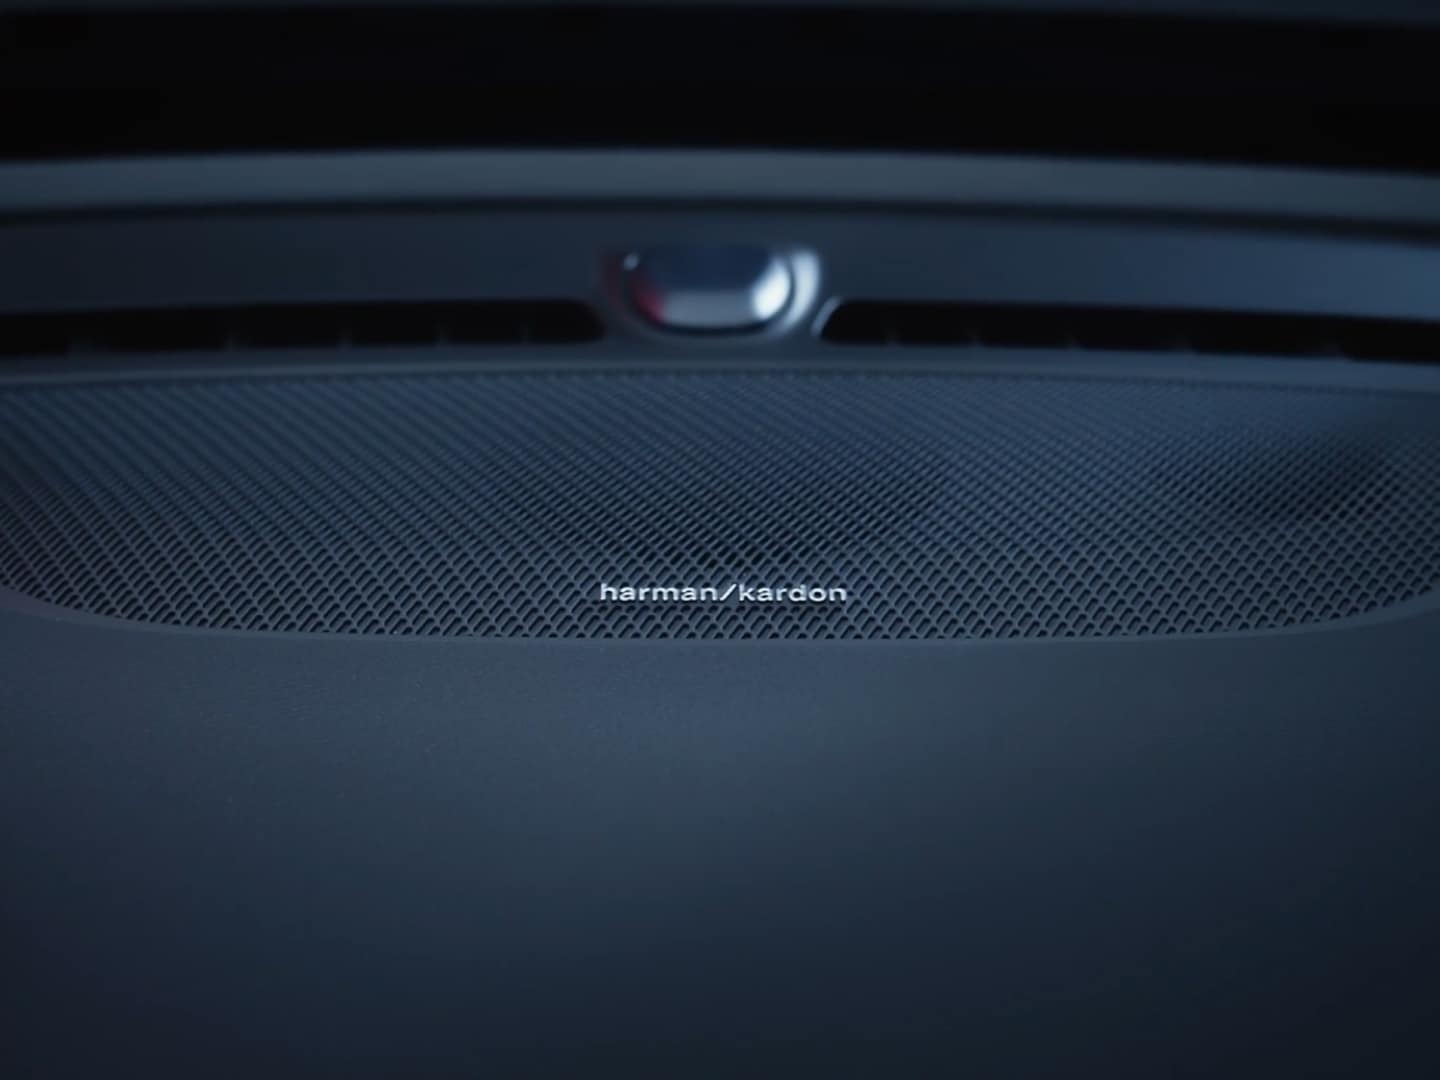 Ein Harman-Kardon-Lautsprecher, Teil des Premium-Soundsystems im Volvo EC40.